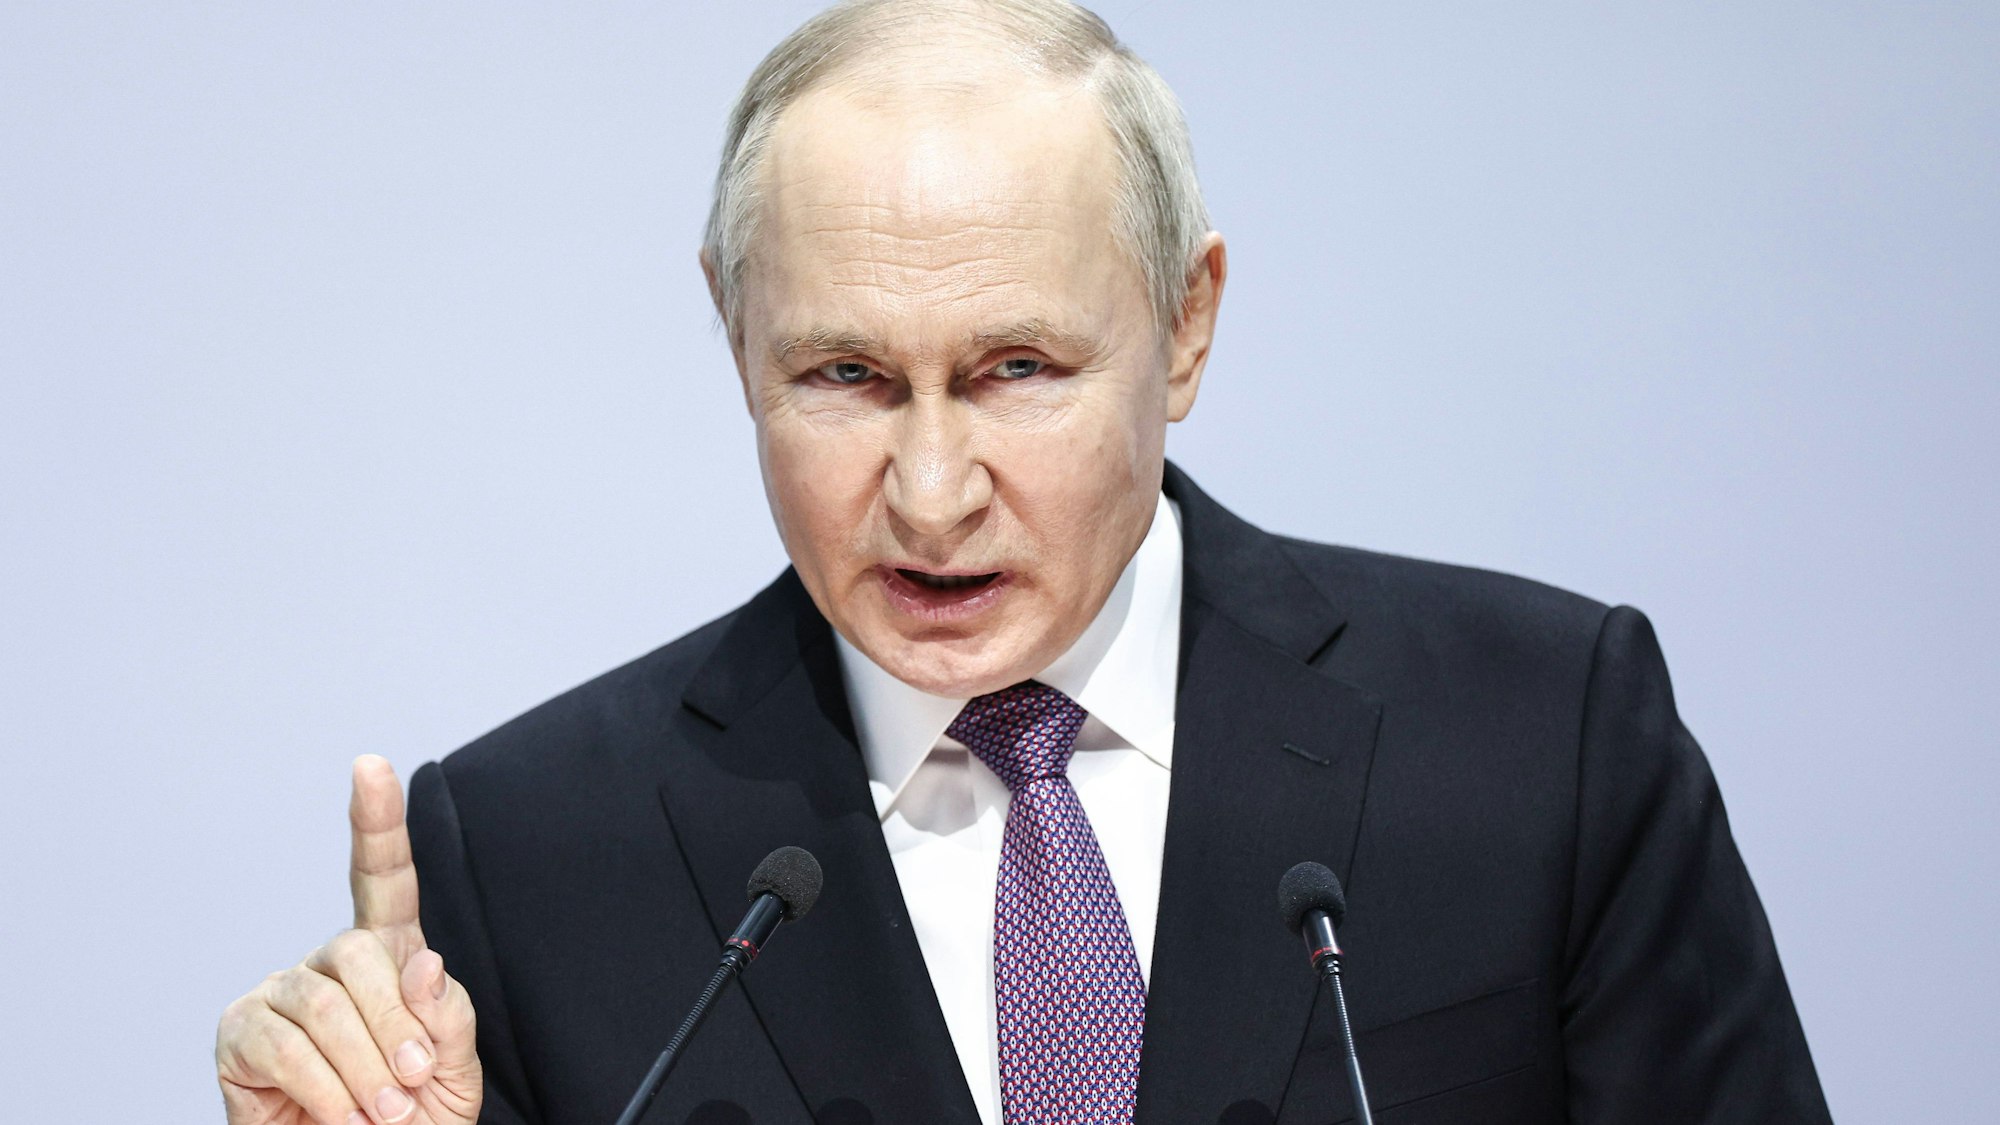 Wladimir Putin hat seine Ziele erneut unterstrichen. Russland befinde sich im „heiligen Kampf“ gegen „Neonazismus“, so der Kremlchef. Seine Drohung hat Putin bereits auf das Baltikum ausgedehnt.